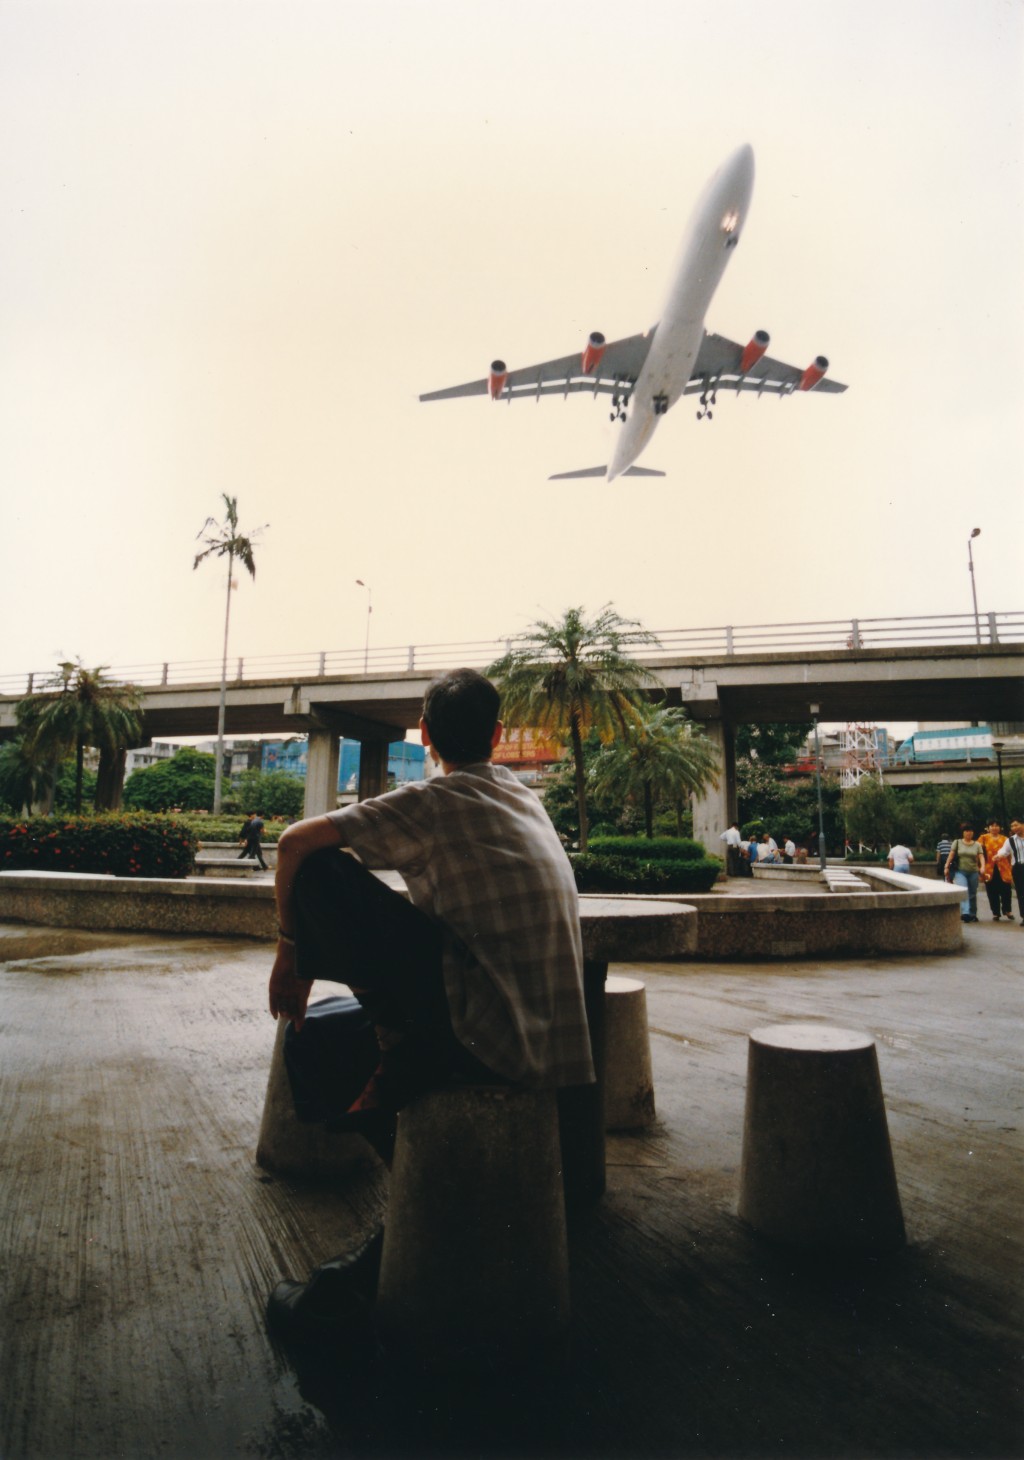 启德机场每次飞机降落贴近九龙城旧楼，突袭奇景吓坏了许多外国游客。九龙城四处可见飞机踪迹。